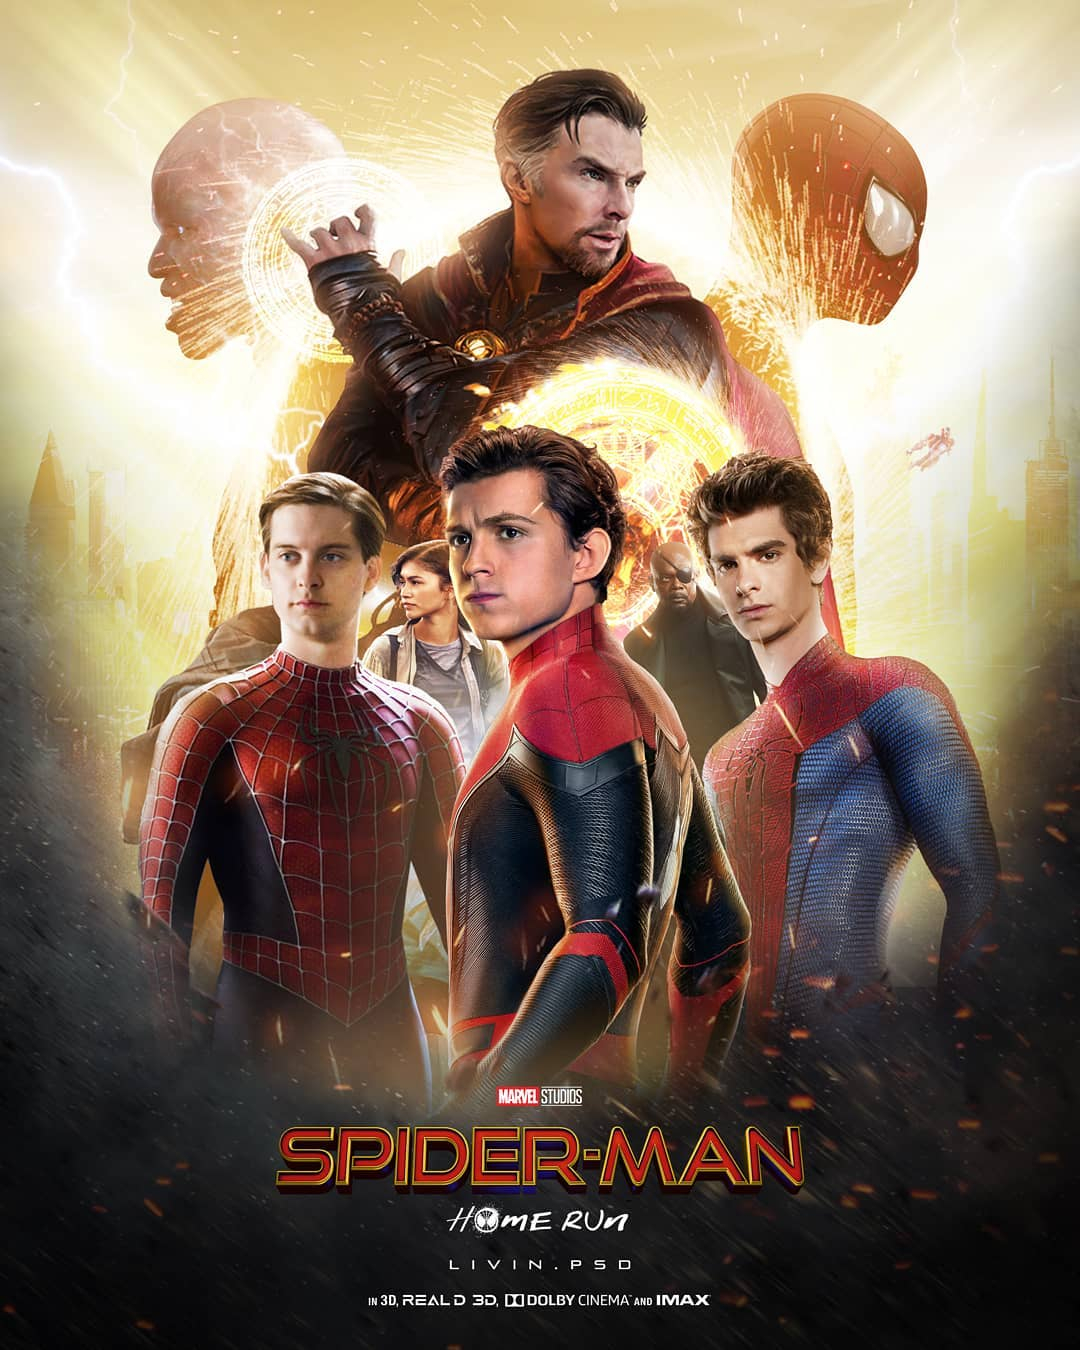 荷兰弟：《蜘蛛侠3》是最有野心的超级英雄独立电影